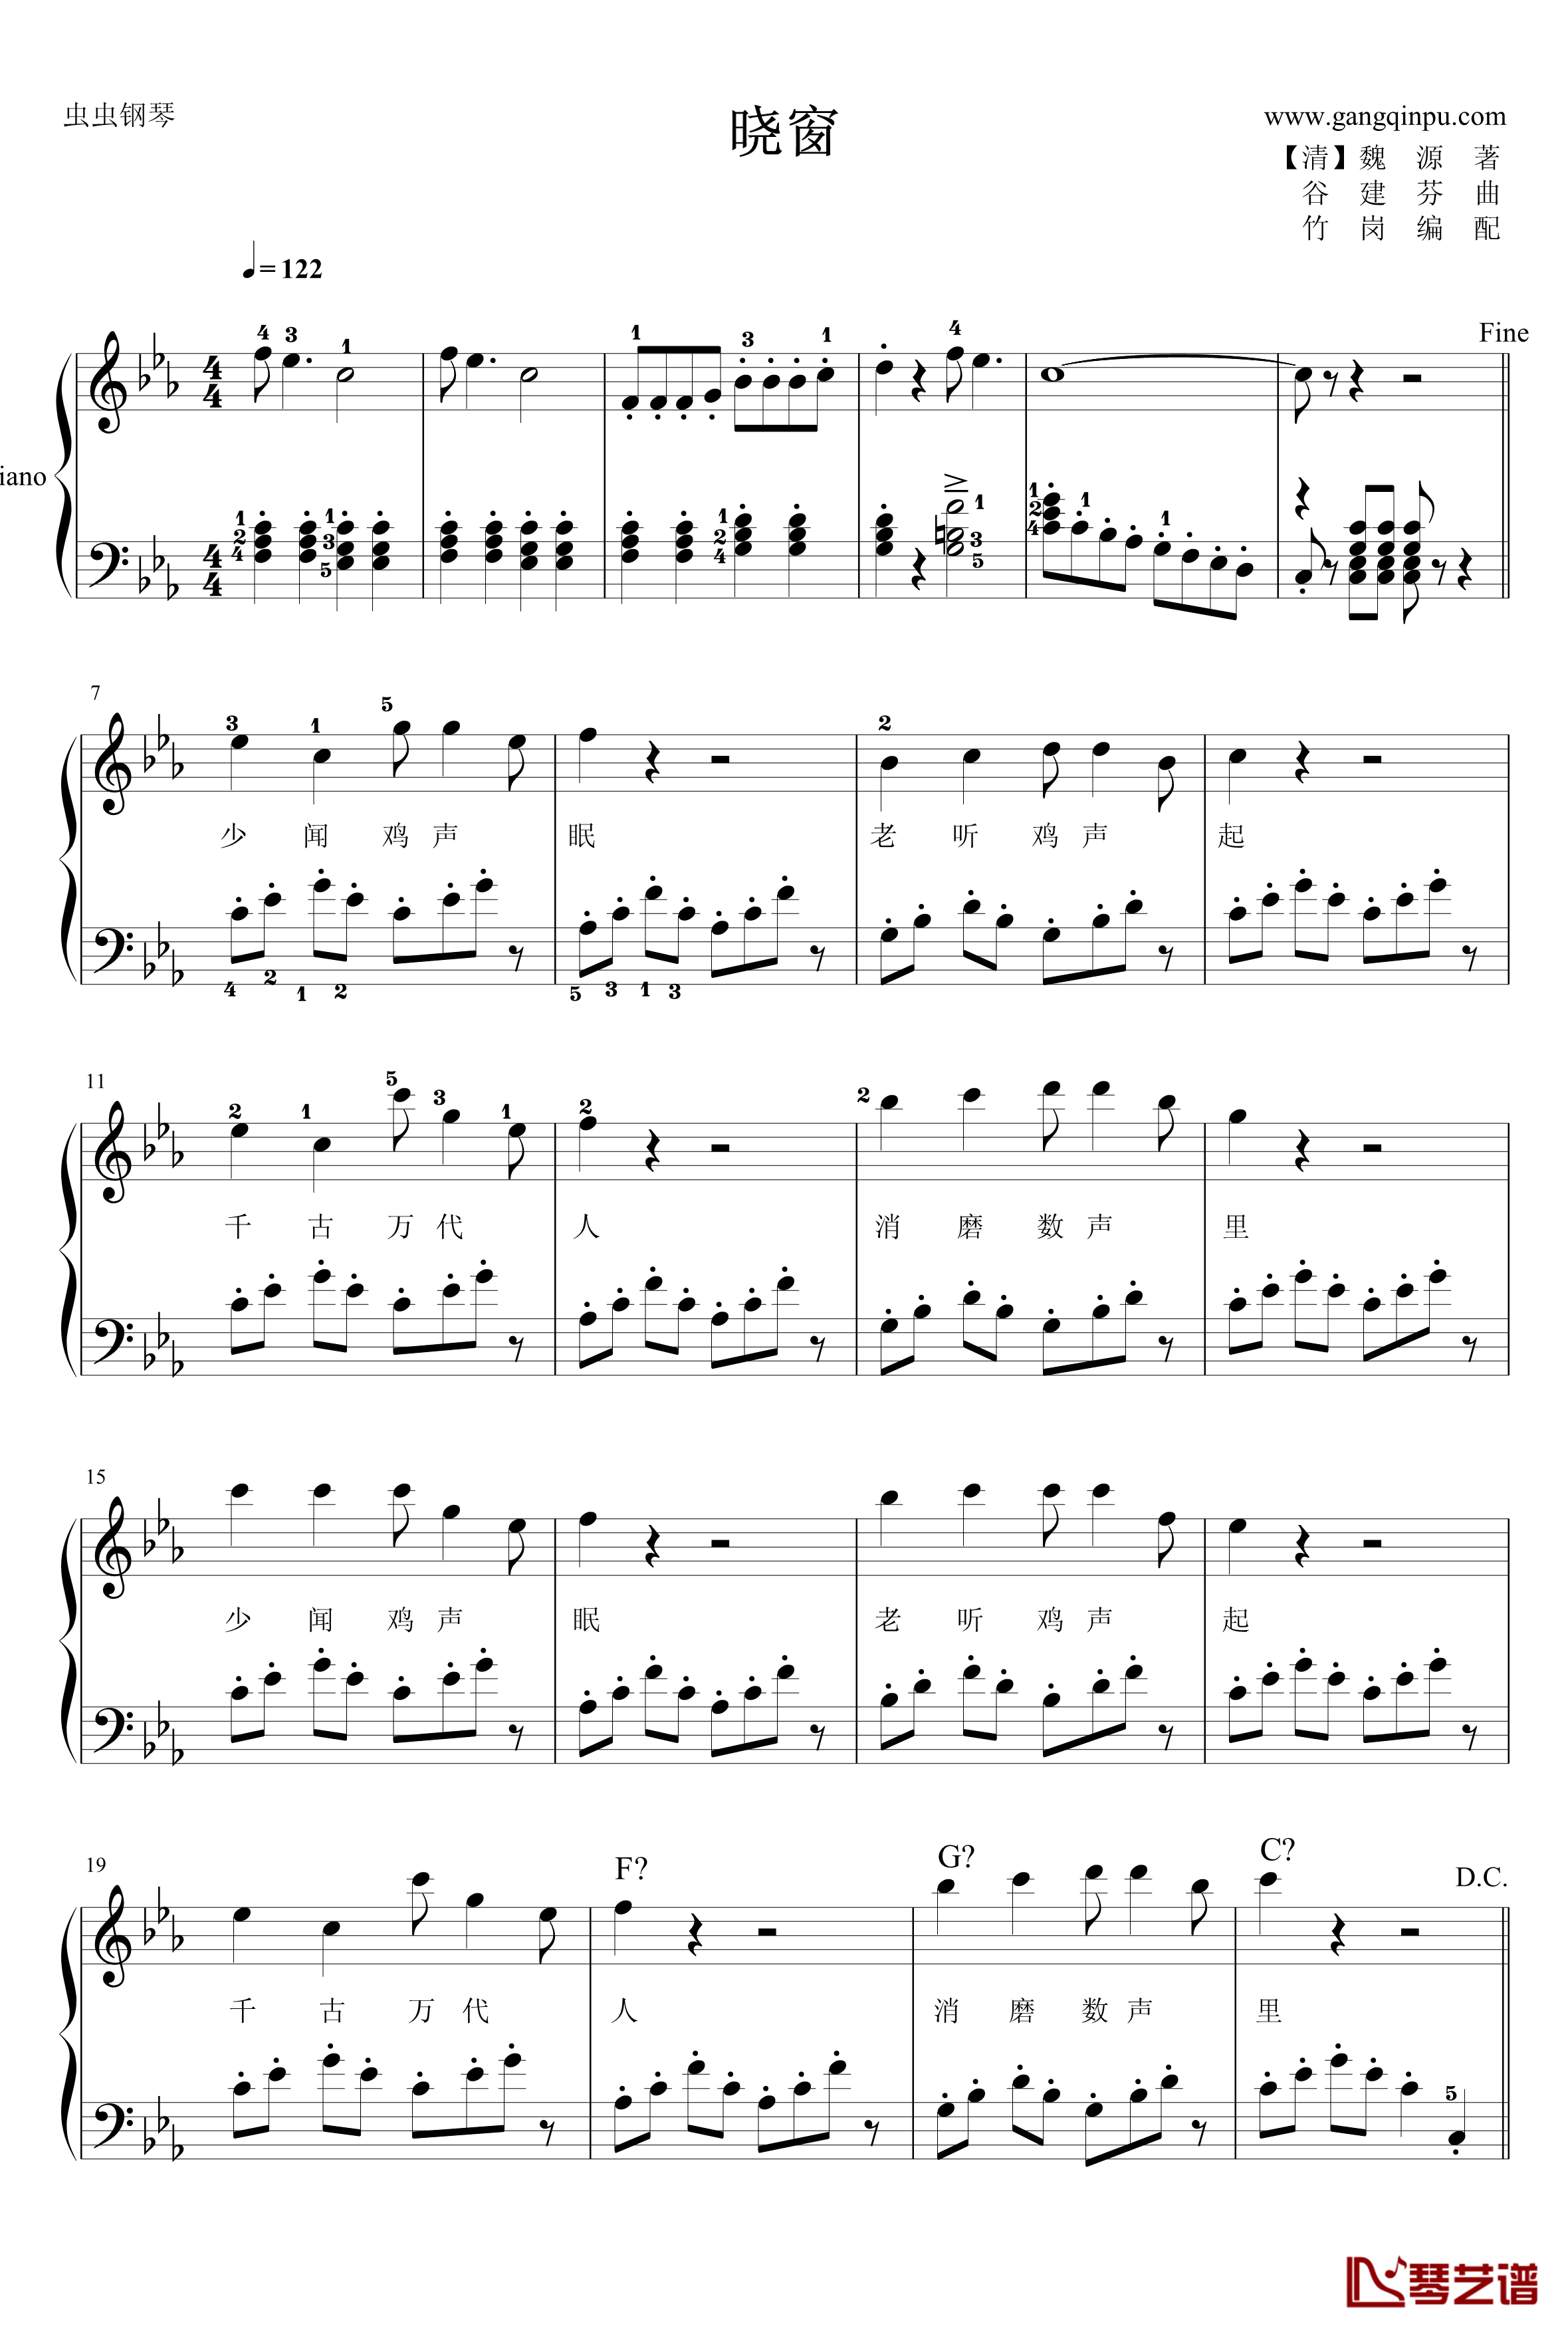 晓窗钢琴谱-谷建芬1